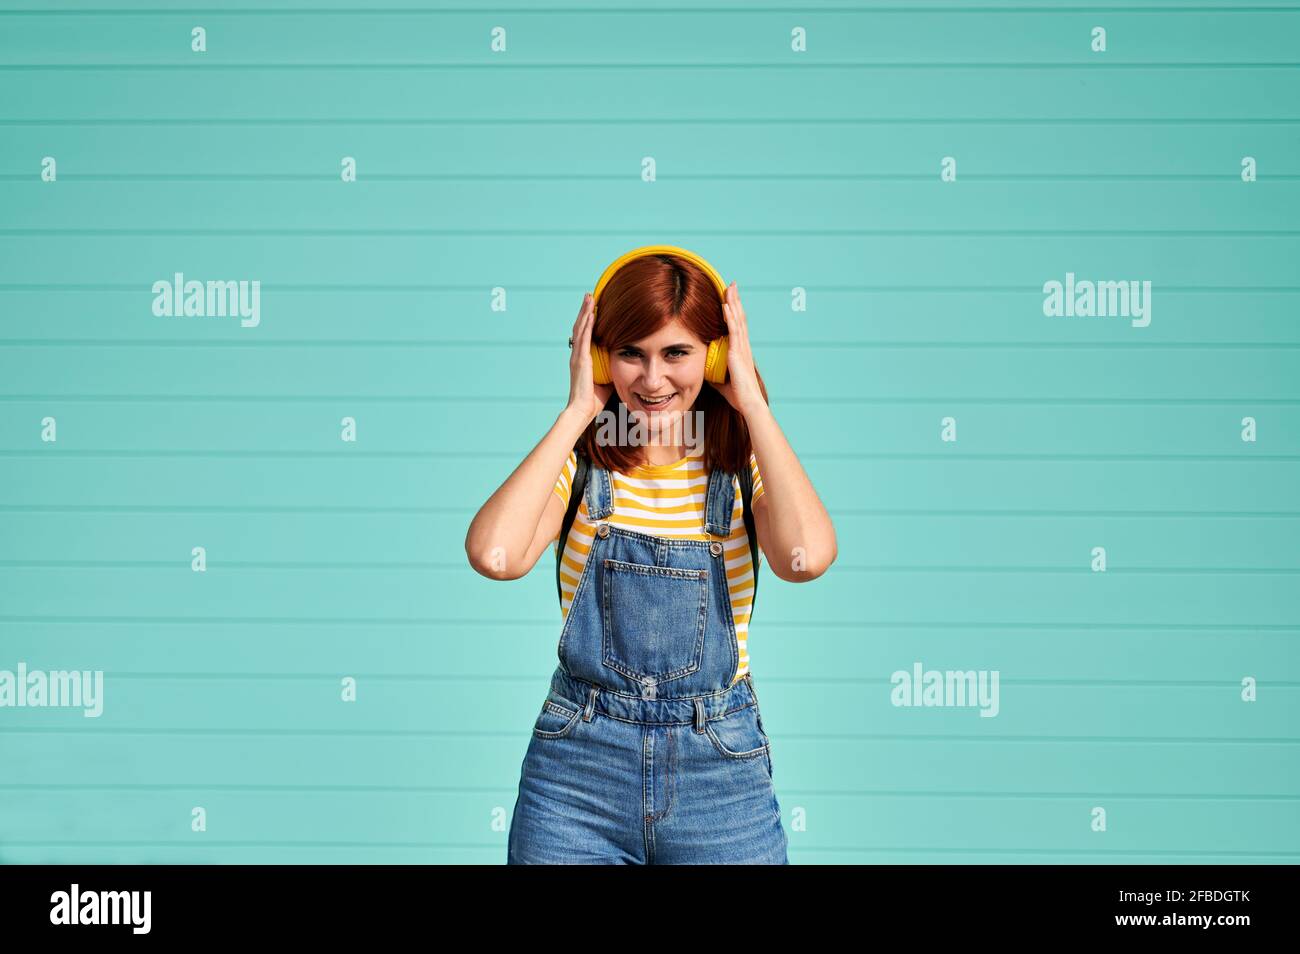 Junge Frau, die im Stehen Musik über kabellose Kopfhörer hört Vorderseite der türkisblauen Wand Stockfoto